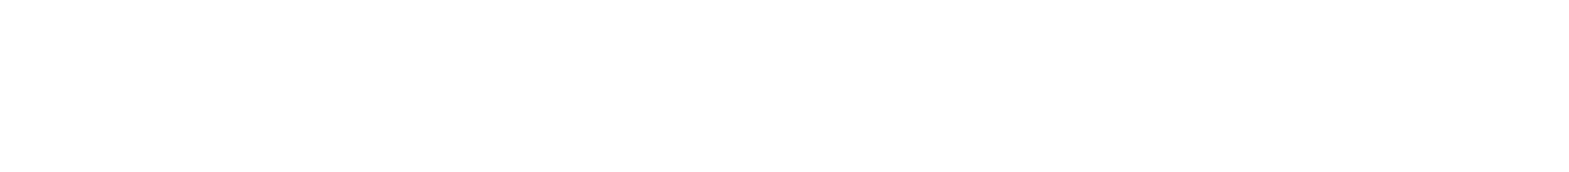 Harsco
 Logo groß für dunkle Hintergründe (transparentes PNG)